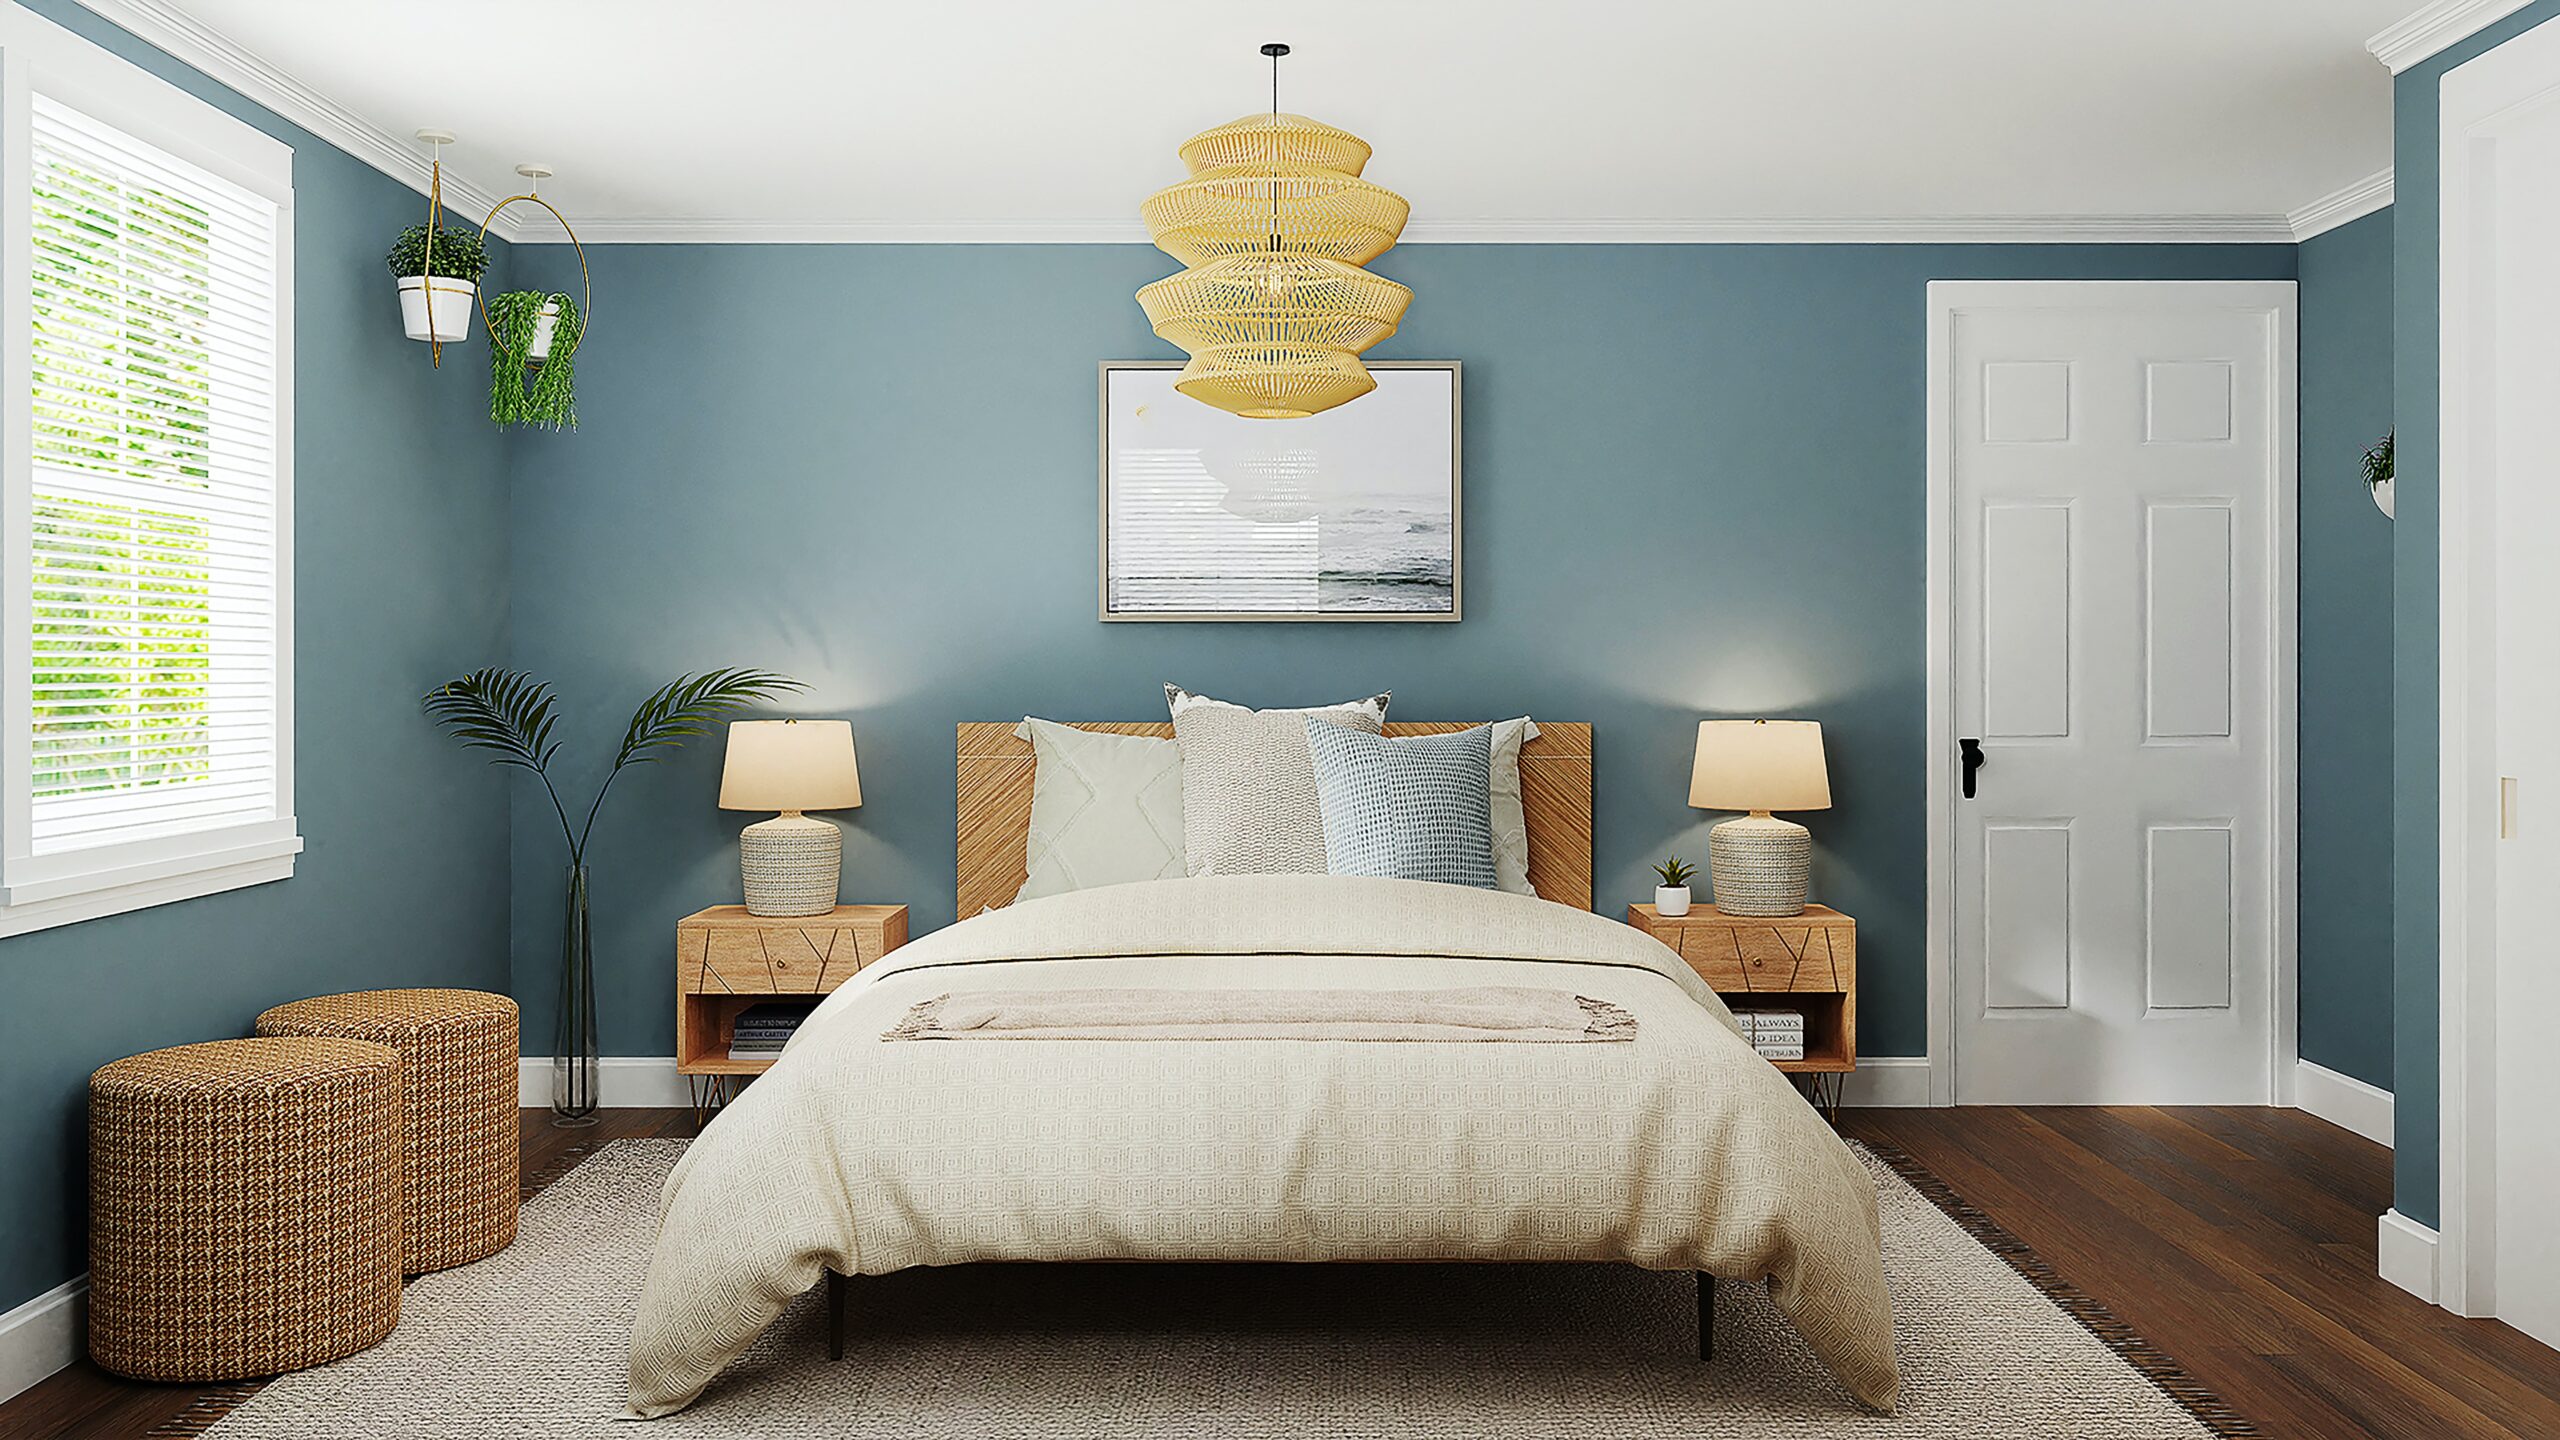 Afwijzen Verlaten lijden Lamp voor plafond slaapkamer - Interieur Inspiratie